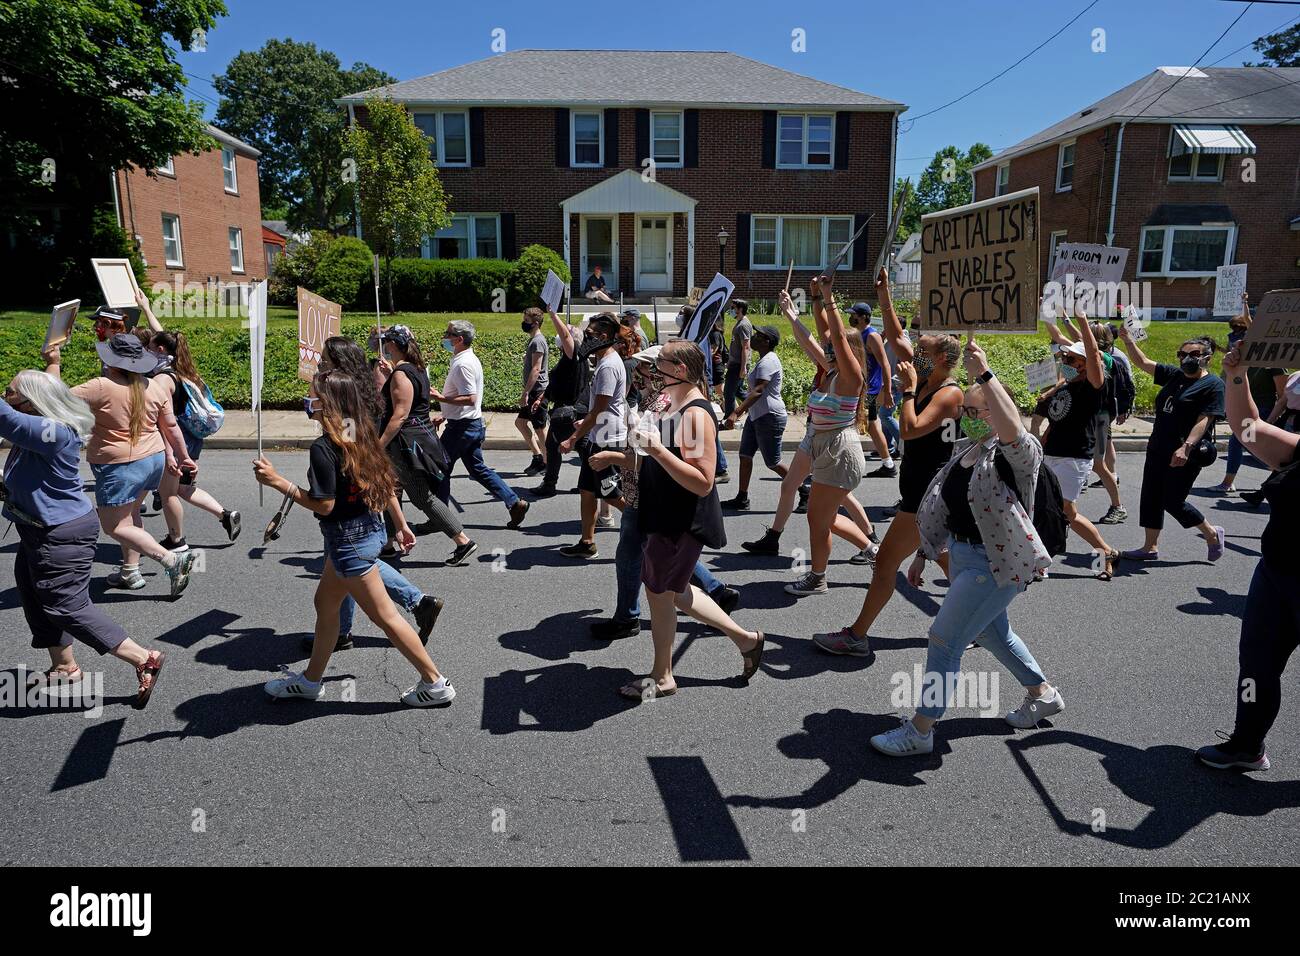 Hunderte versammelten sich am 14. Juni 2020 zu einem friedensmarsch zur Unterstützung von Black Lives Matter in der kleinen Stadtgemeinde Emmaus, Pennsylvania. Stockfoto